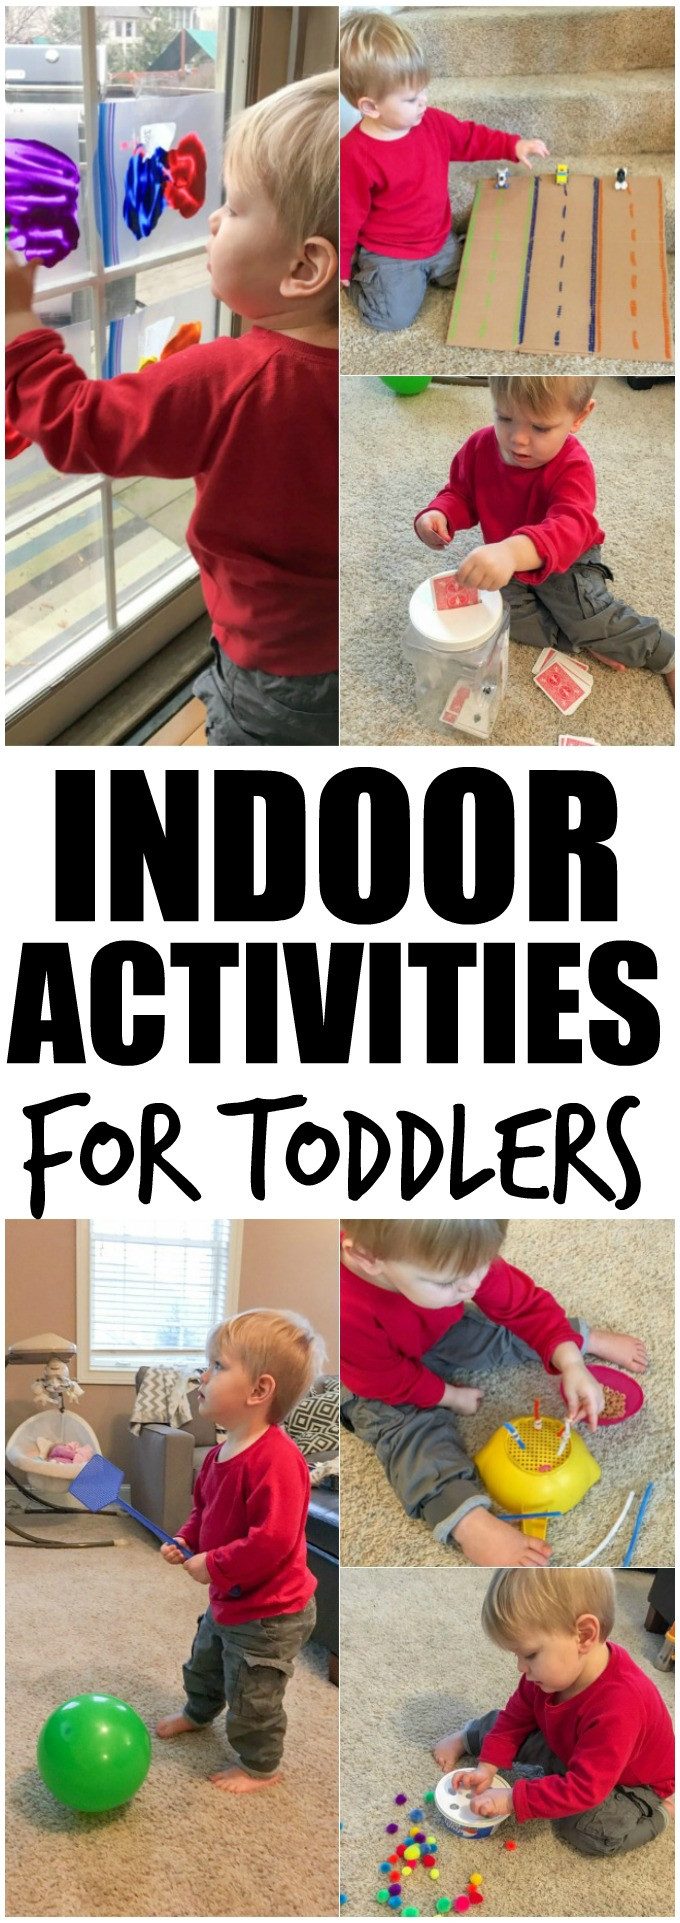 Indoor Winter Activities For Toddlers
 Indoor Activities for Toddlers